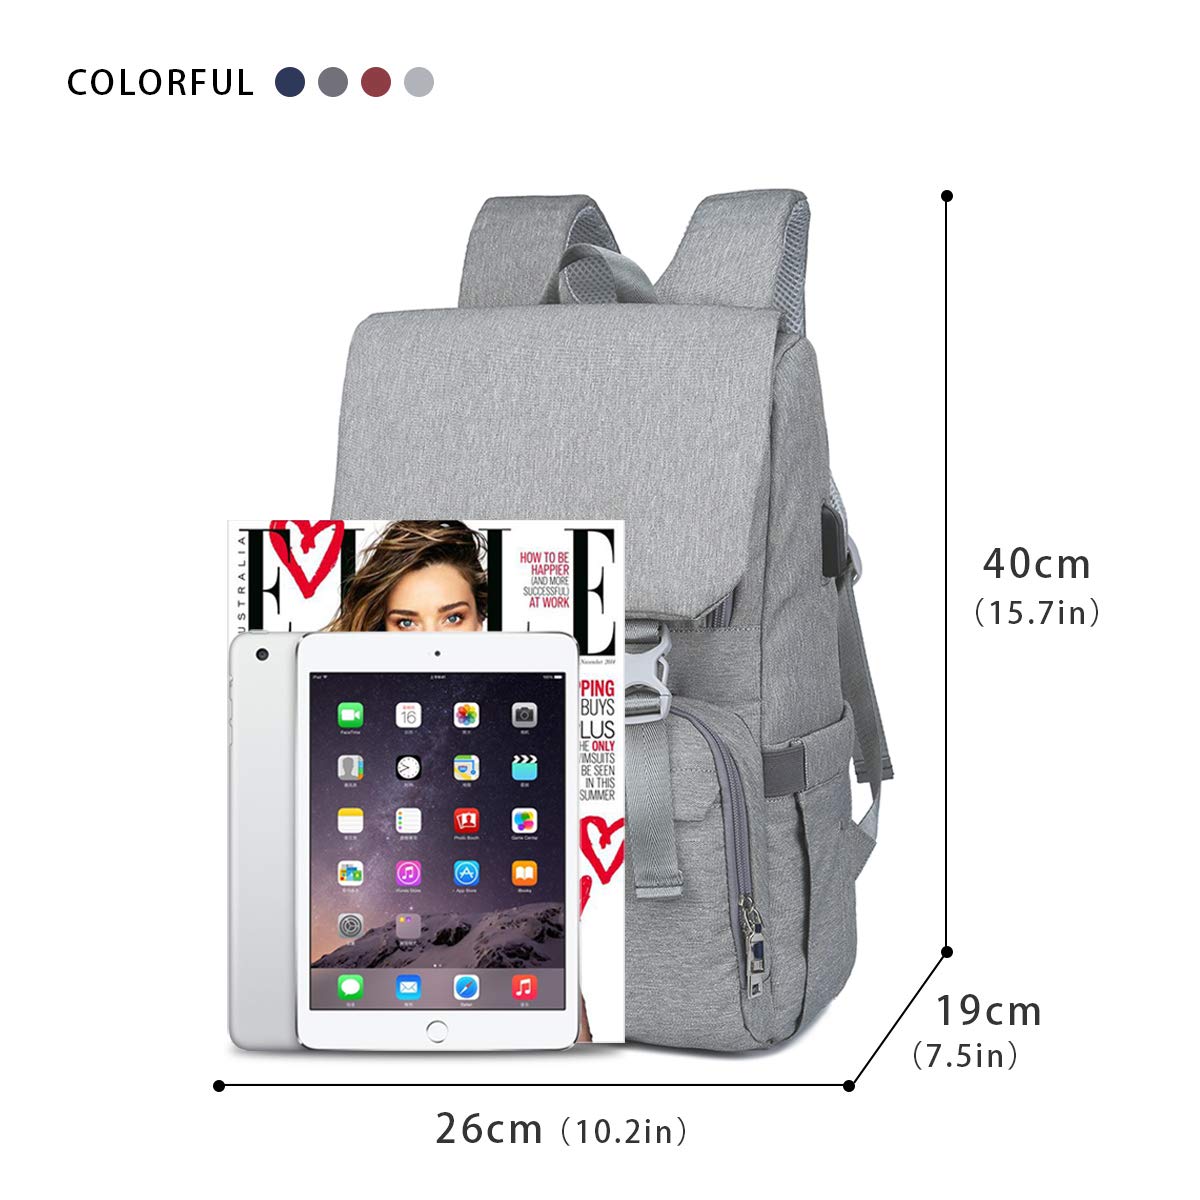 Waterproof Diaper bag / Baby Nappy backpack